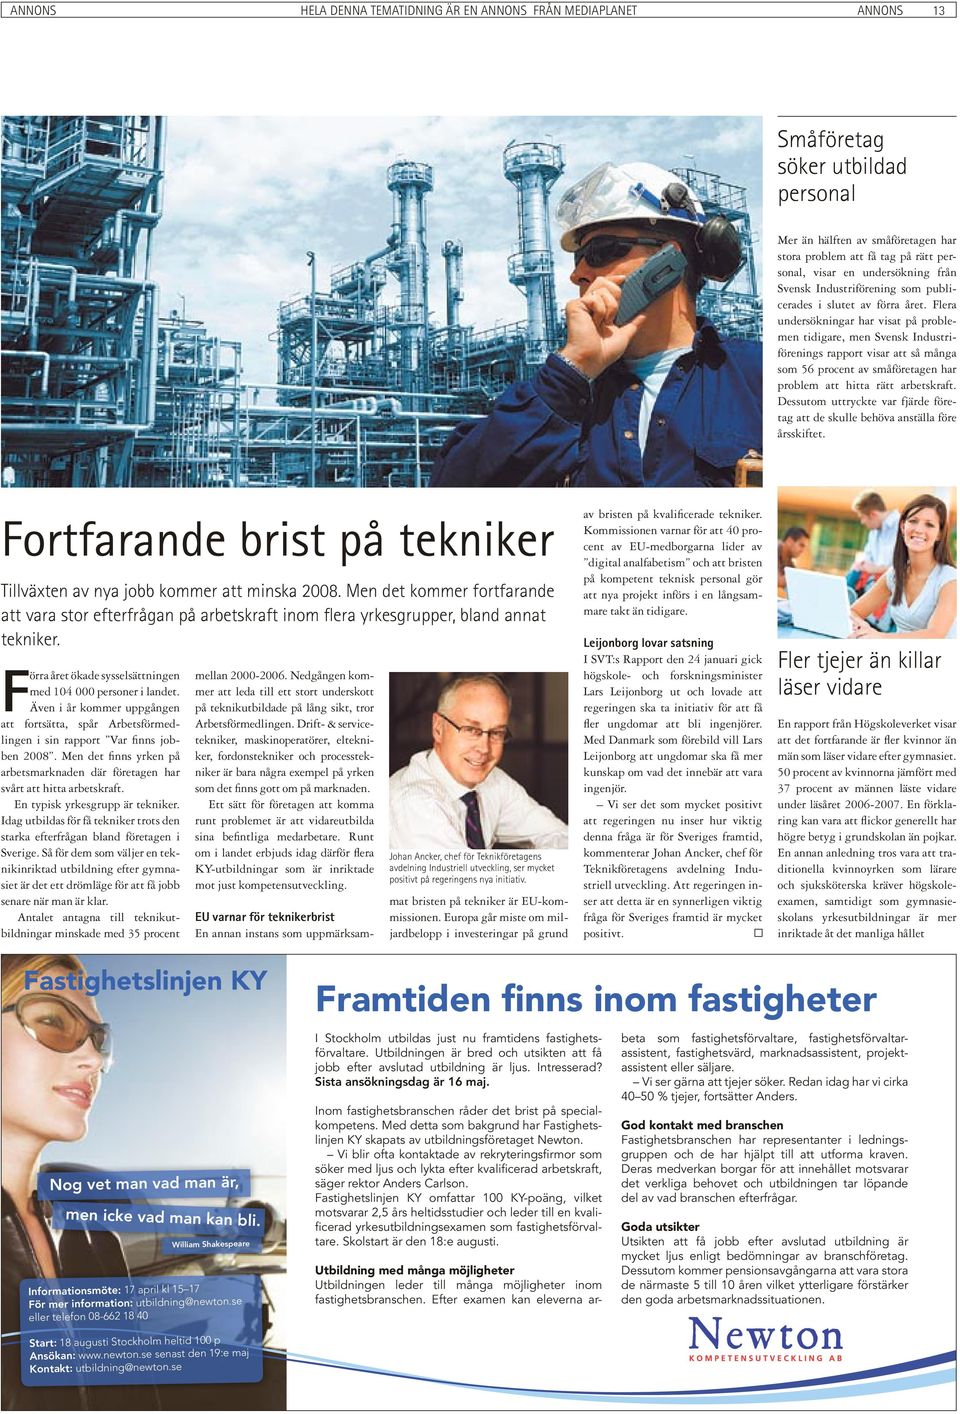 Flera undersökningar har visat på problemen tidigare, men Svensk Industriförenings rapport visar att så många som 56 procent av småföretagen har problem att hitta rätt arbetskraft.